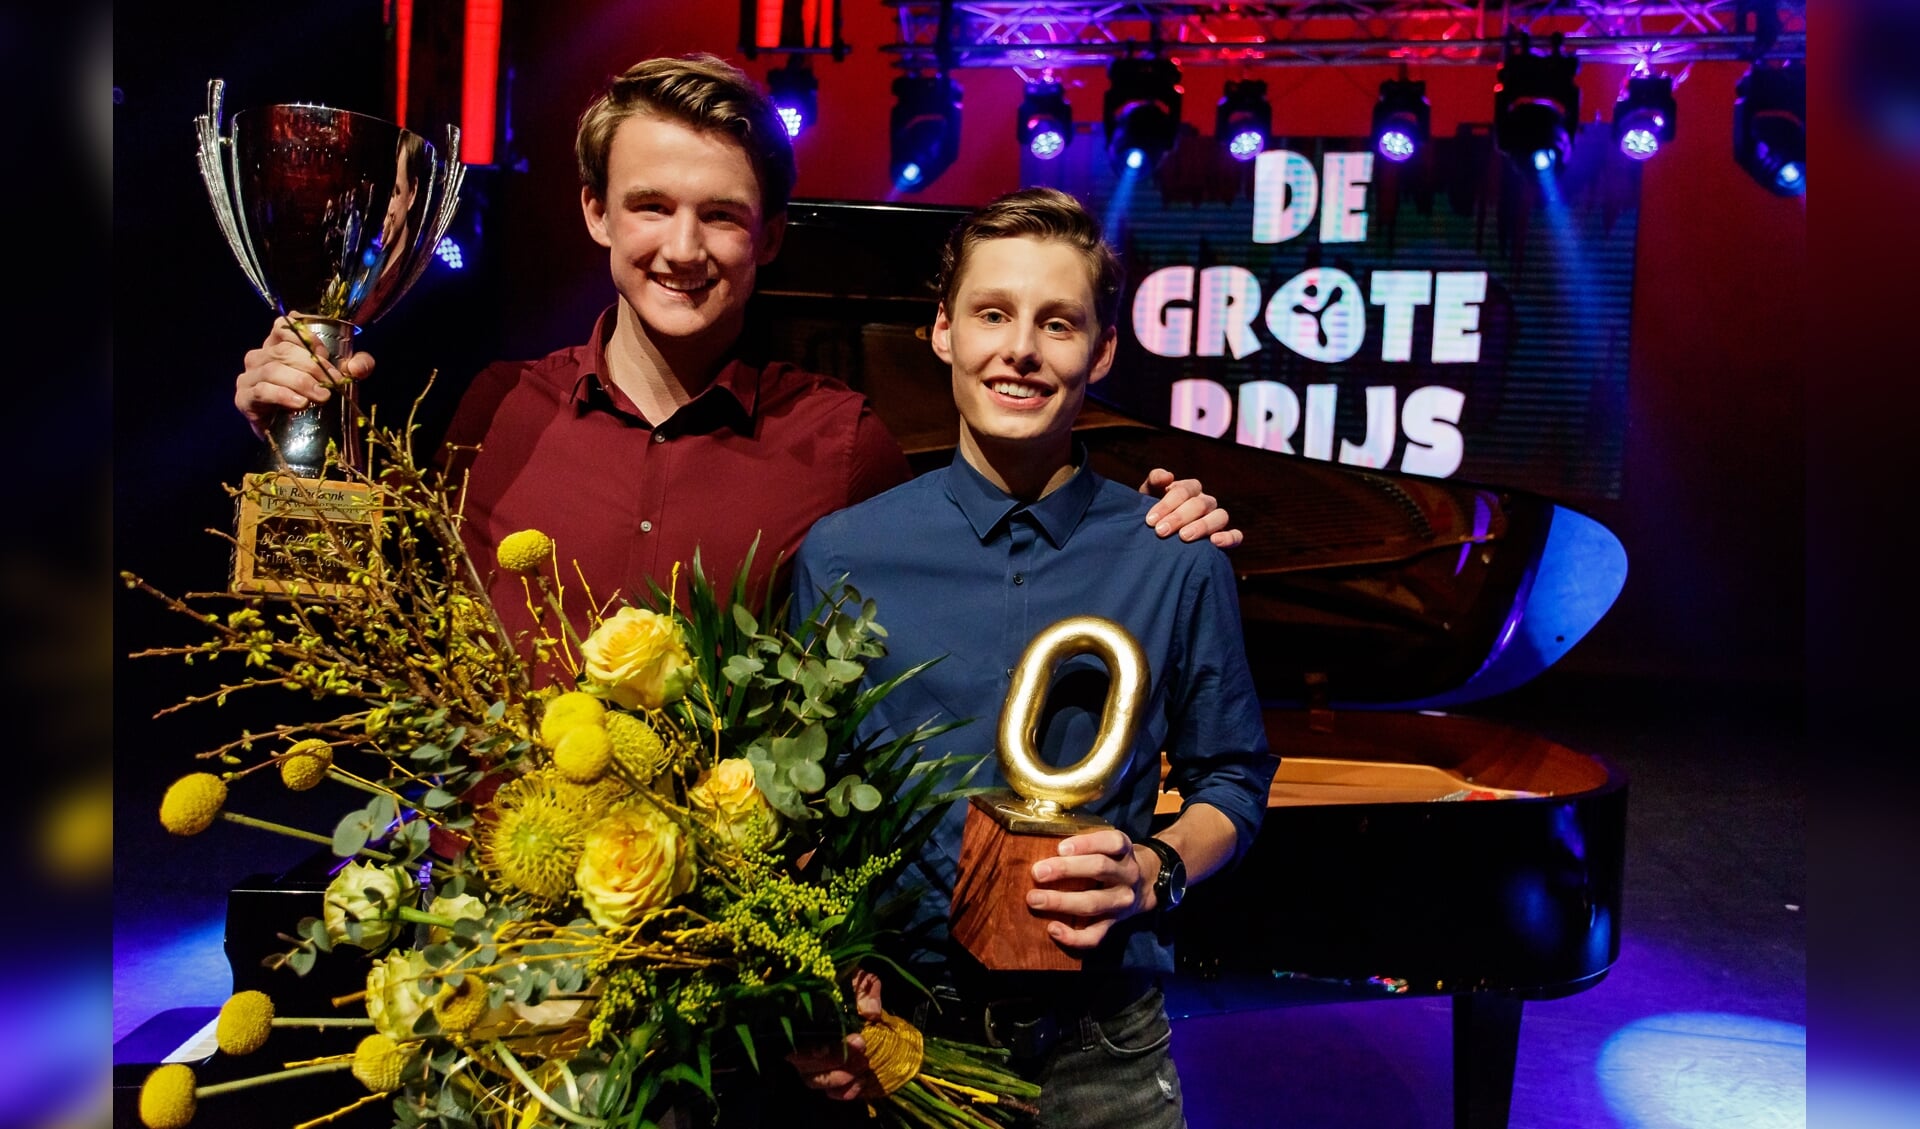 Floris & Daniël zijn de glorieuze winnaars geworden van De Grote Prijs 2019.